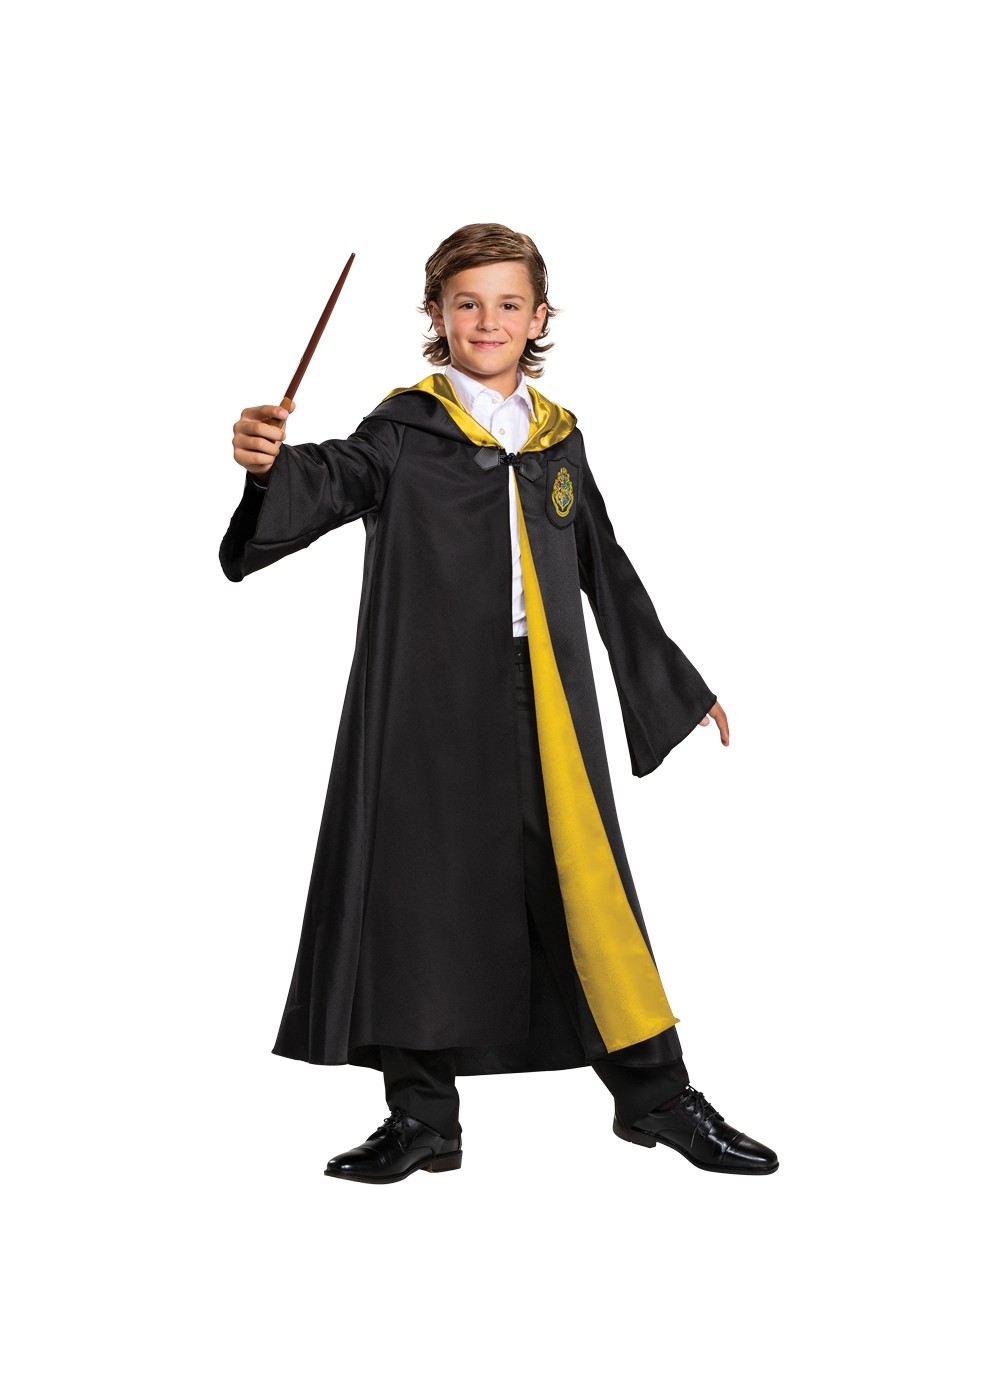 Hogwarts Robe Child